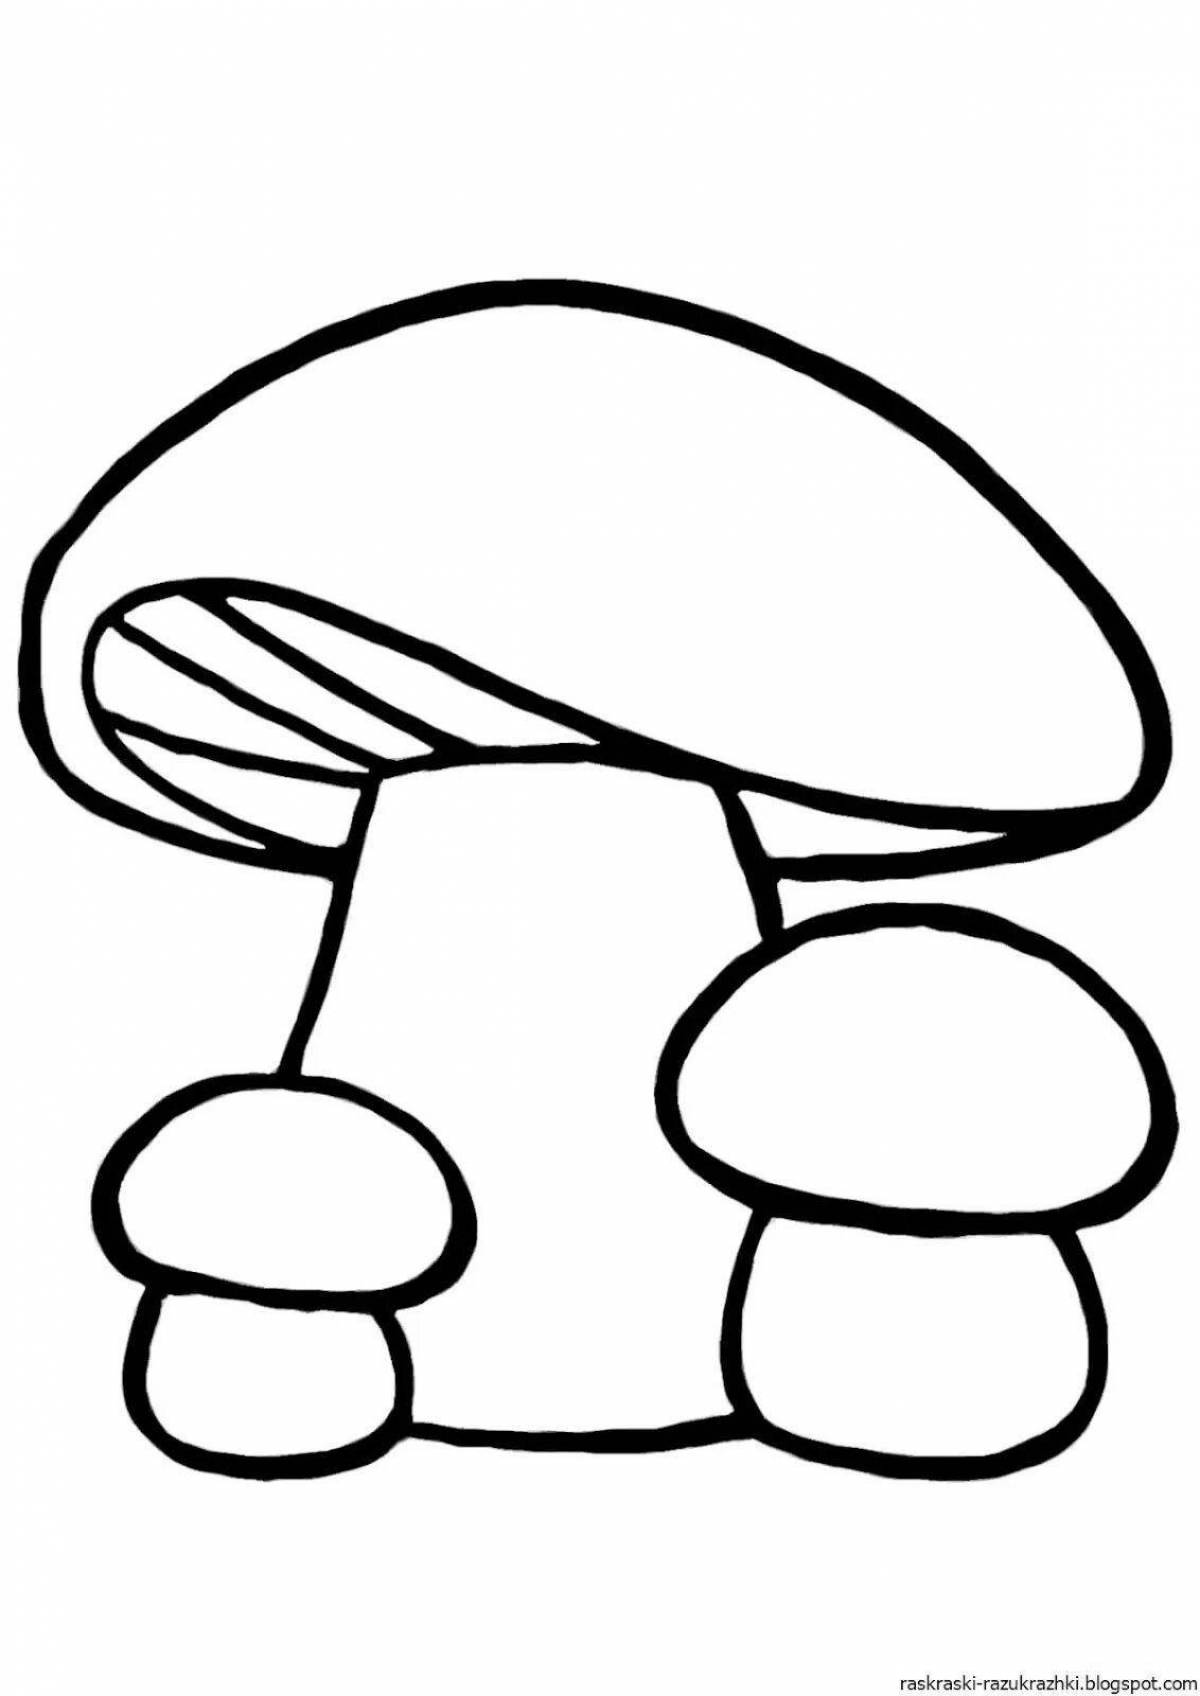 Очаровательная раскраска грибов для детей 3-4 лет